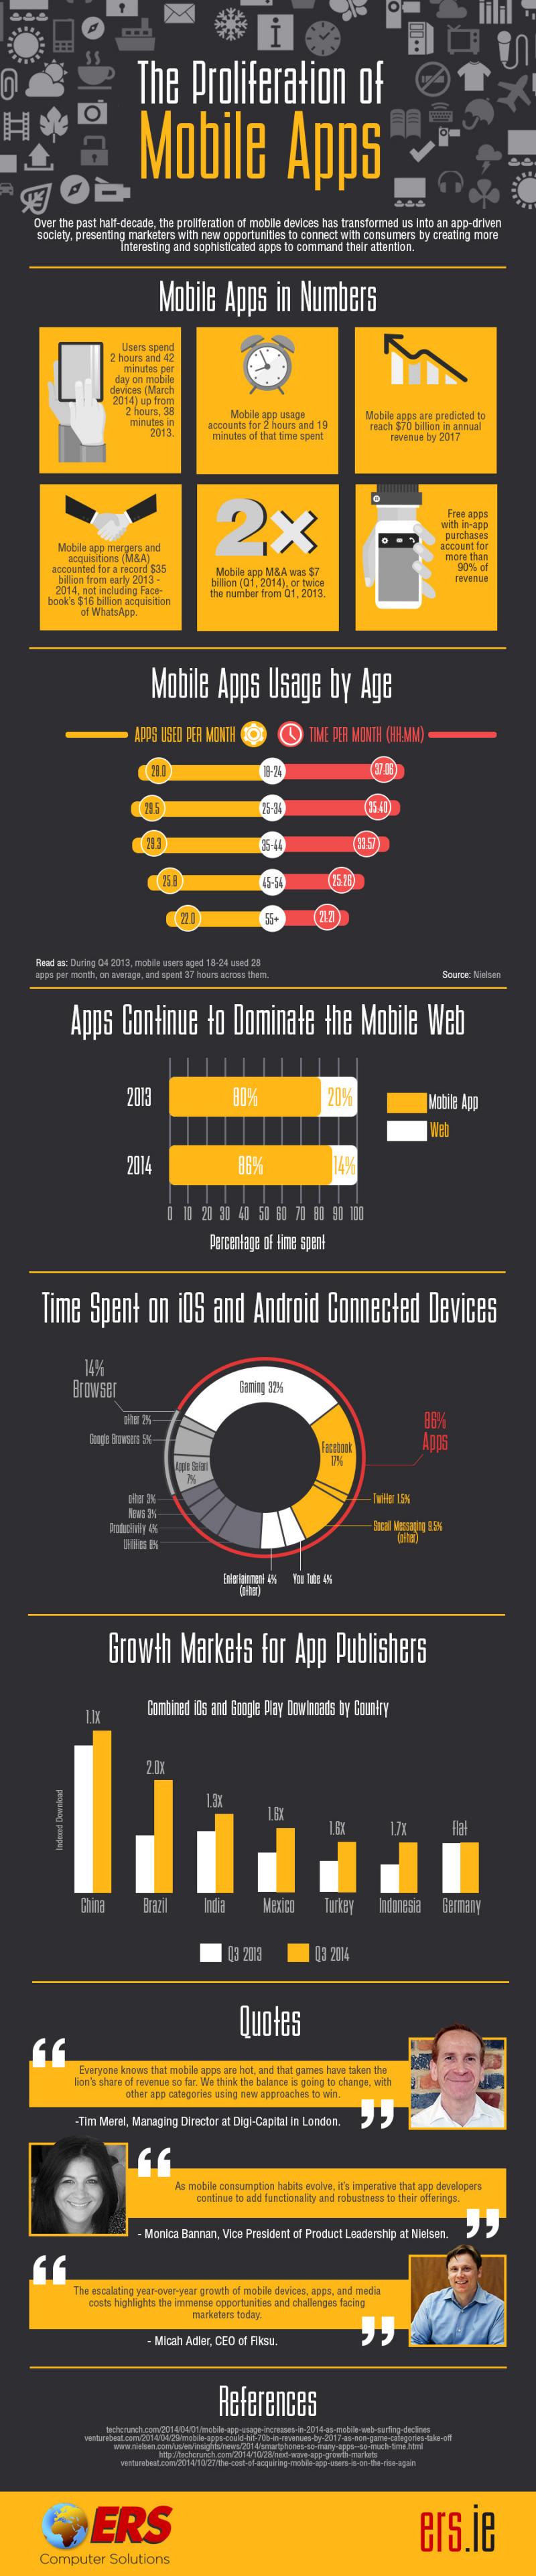 La proliferación de las aplicaciones móviles (infografía)